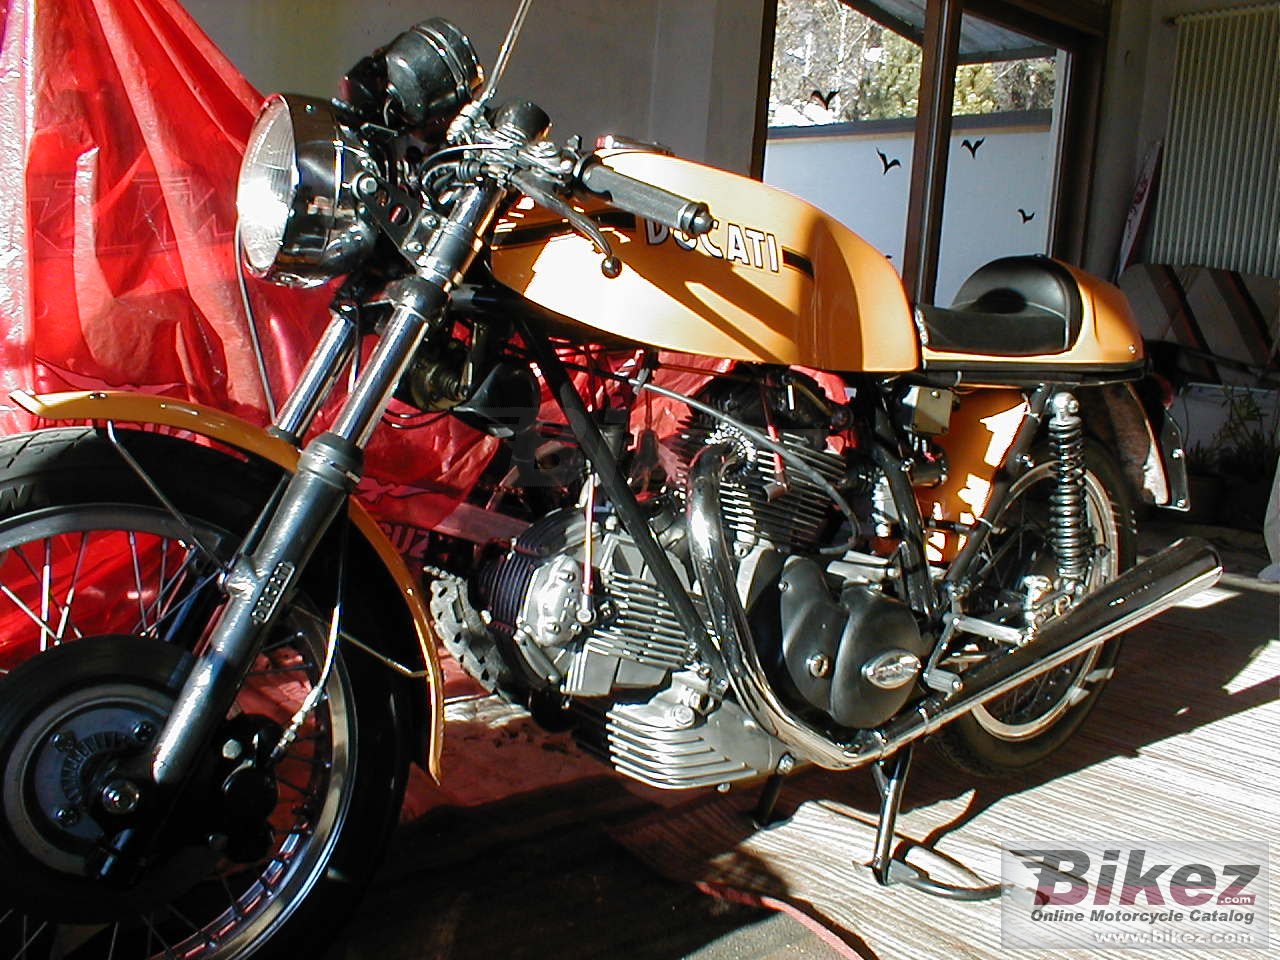 Ducati 750 S Sport